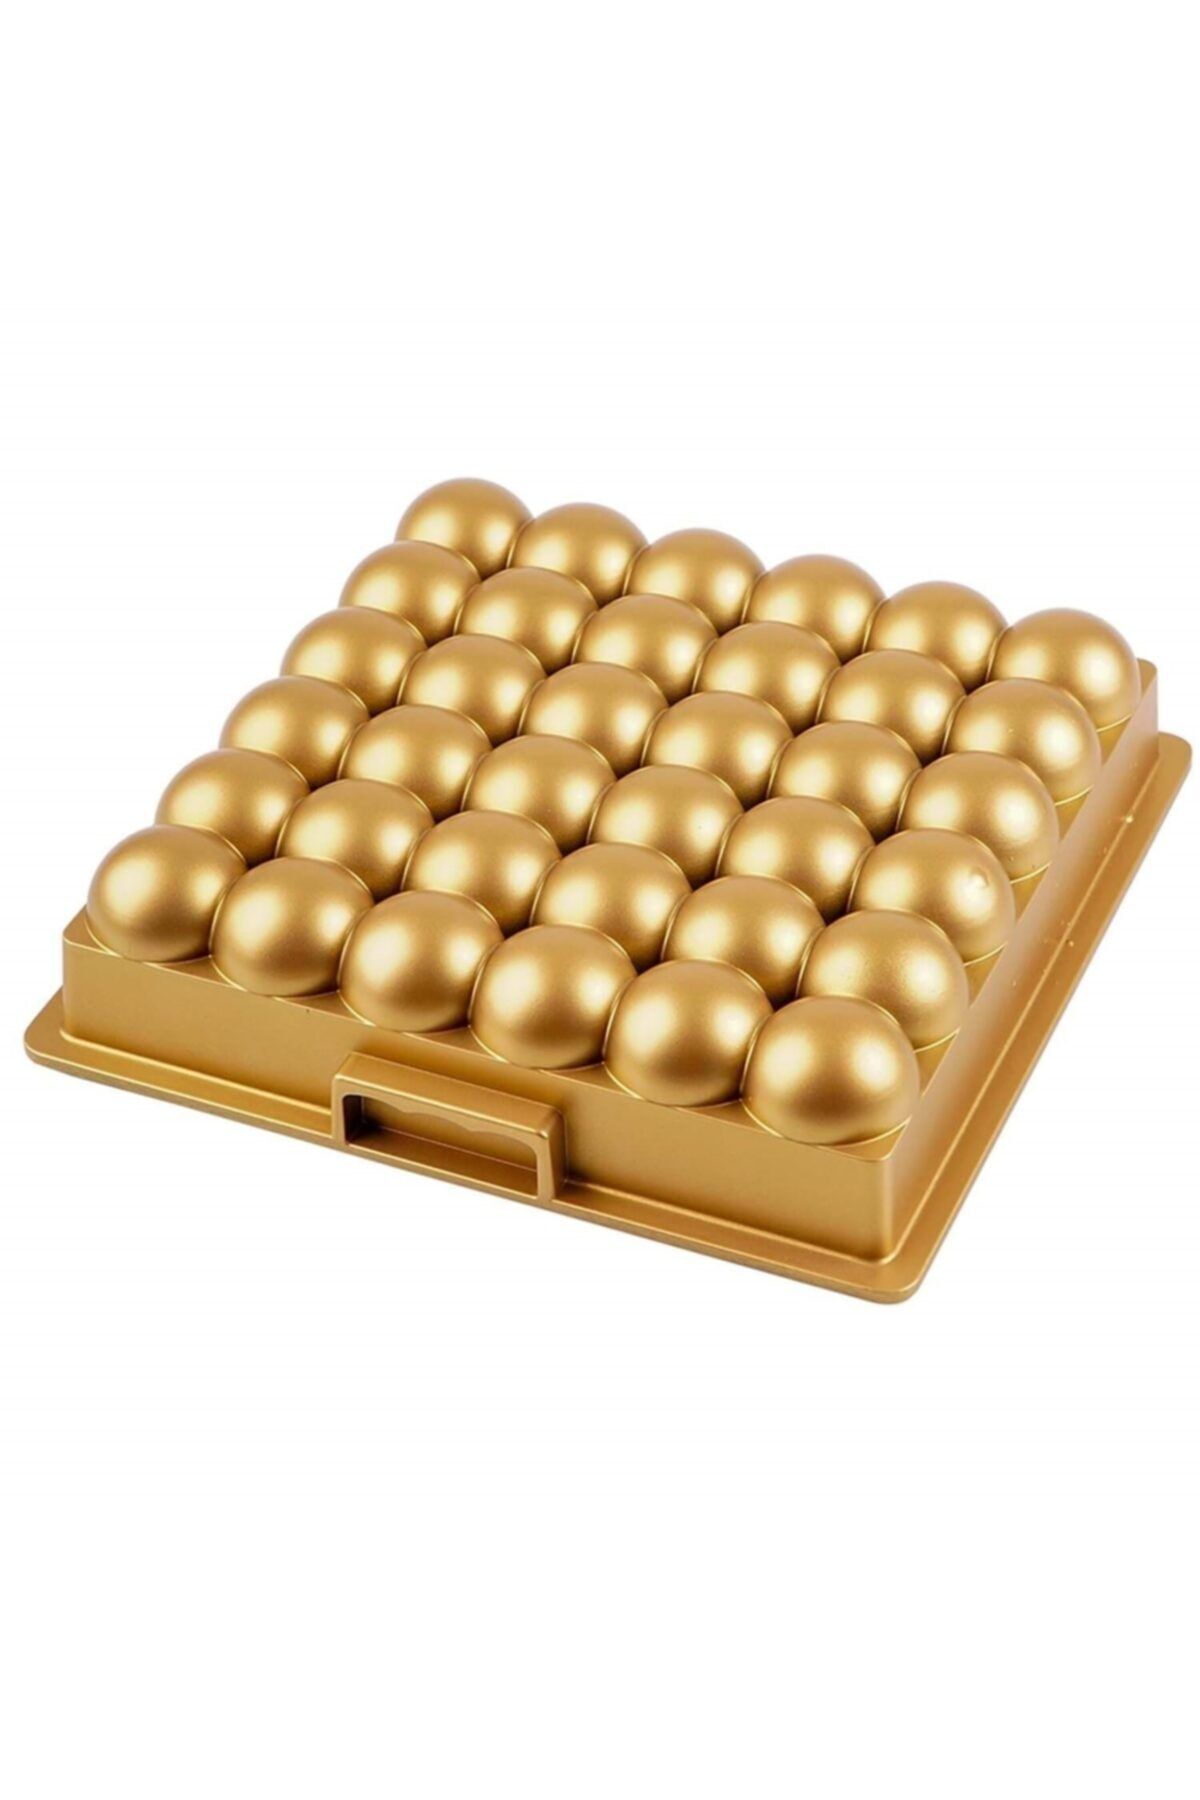 ACAR Atom Döküm Kek Kalıbı - Gold